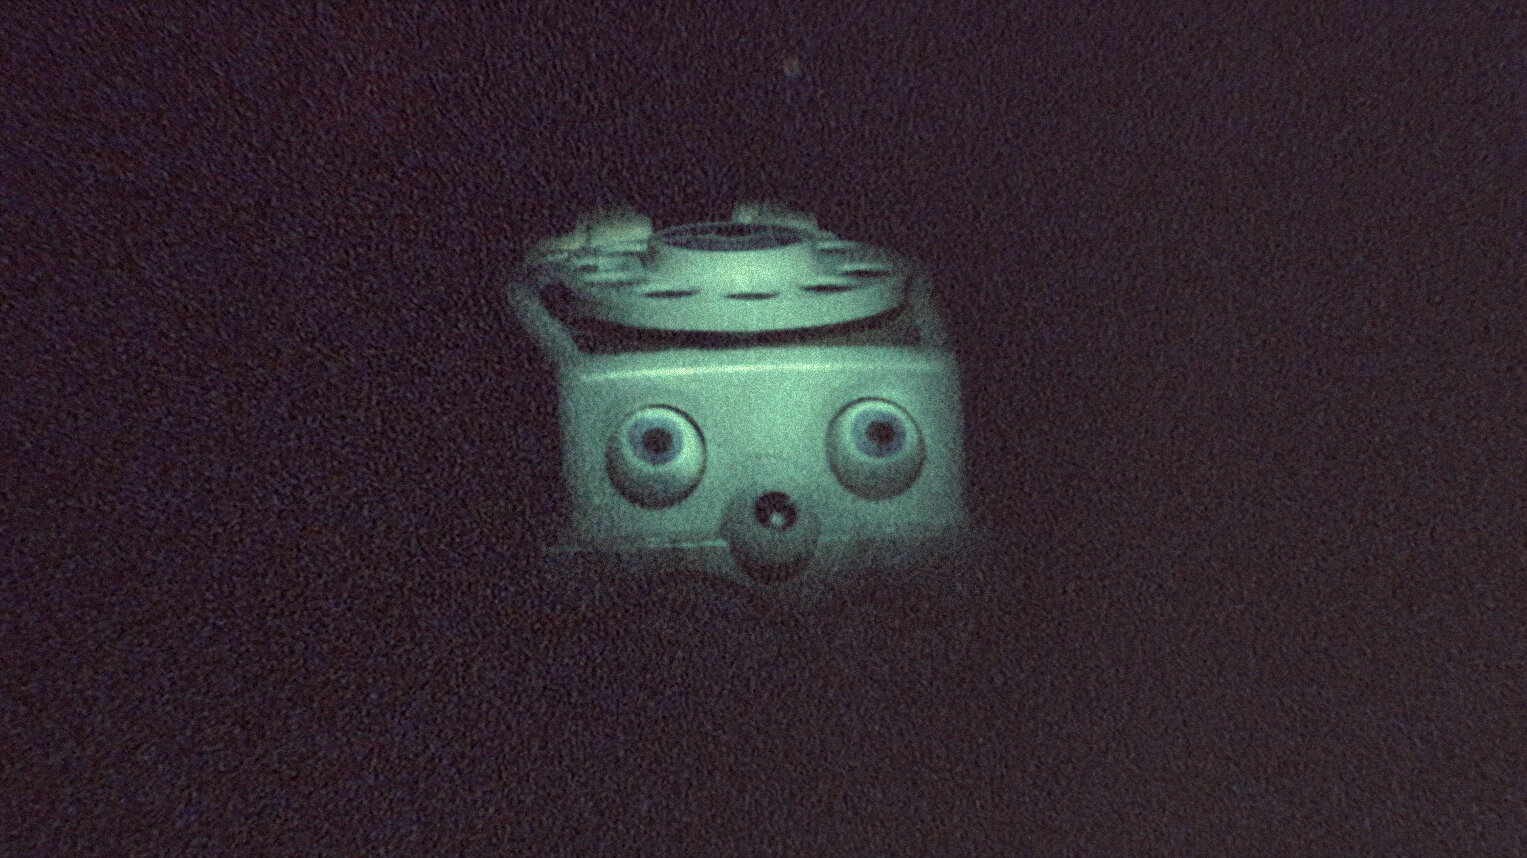 An anthropomorphic toy telephone hidden in the dark.